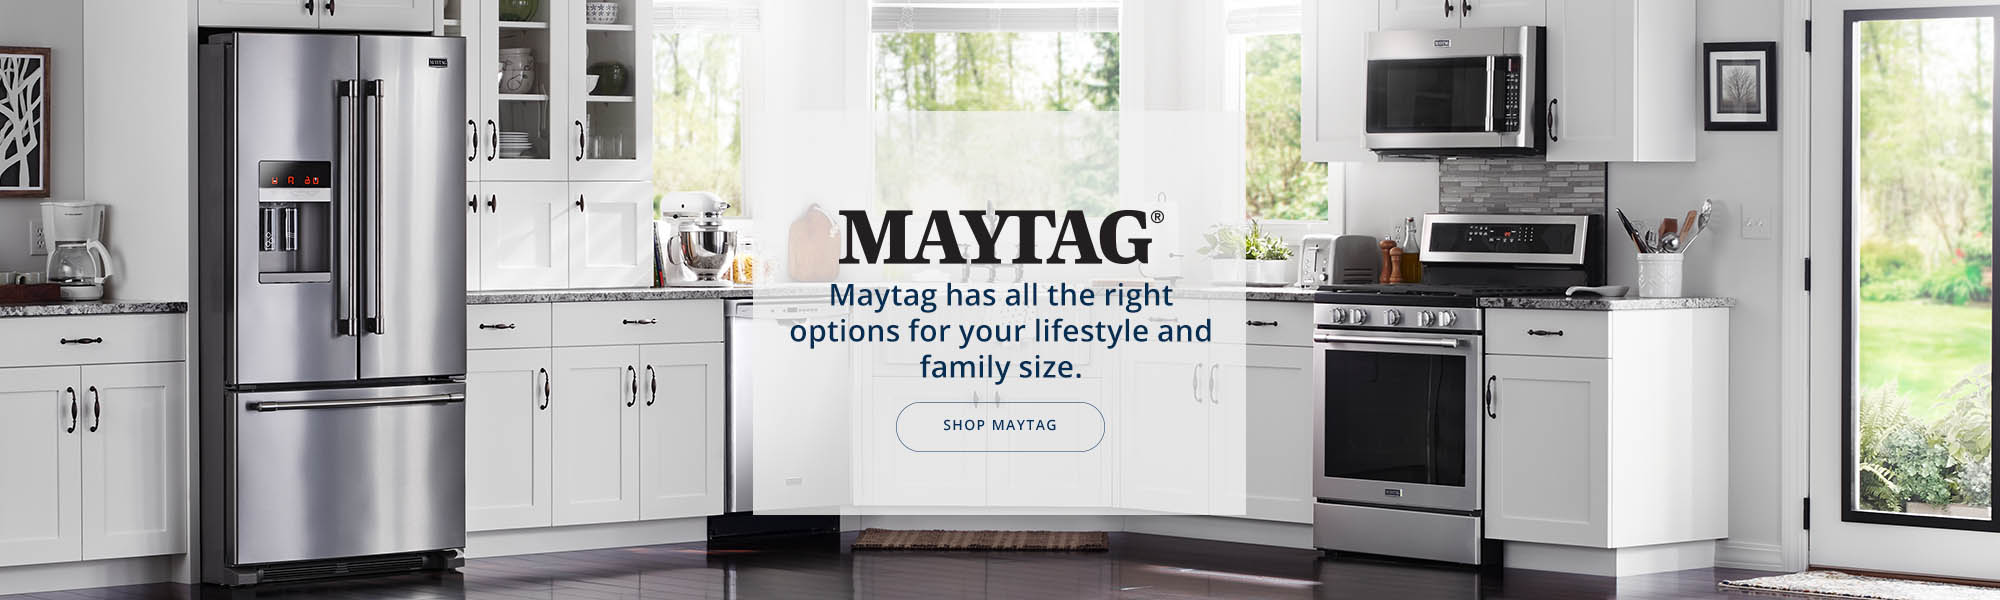 Maytag Kitchen banner